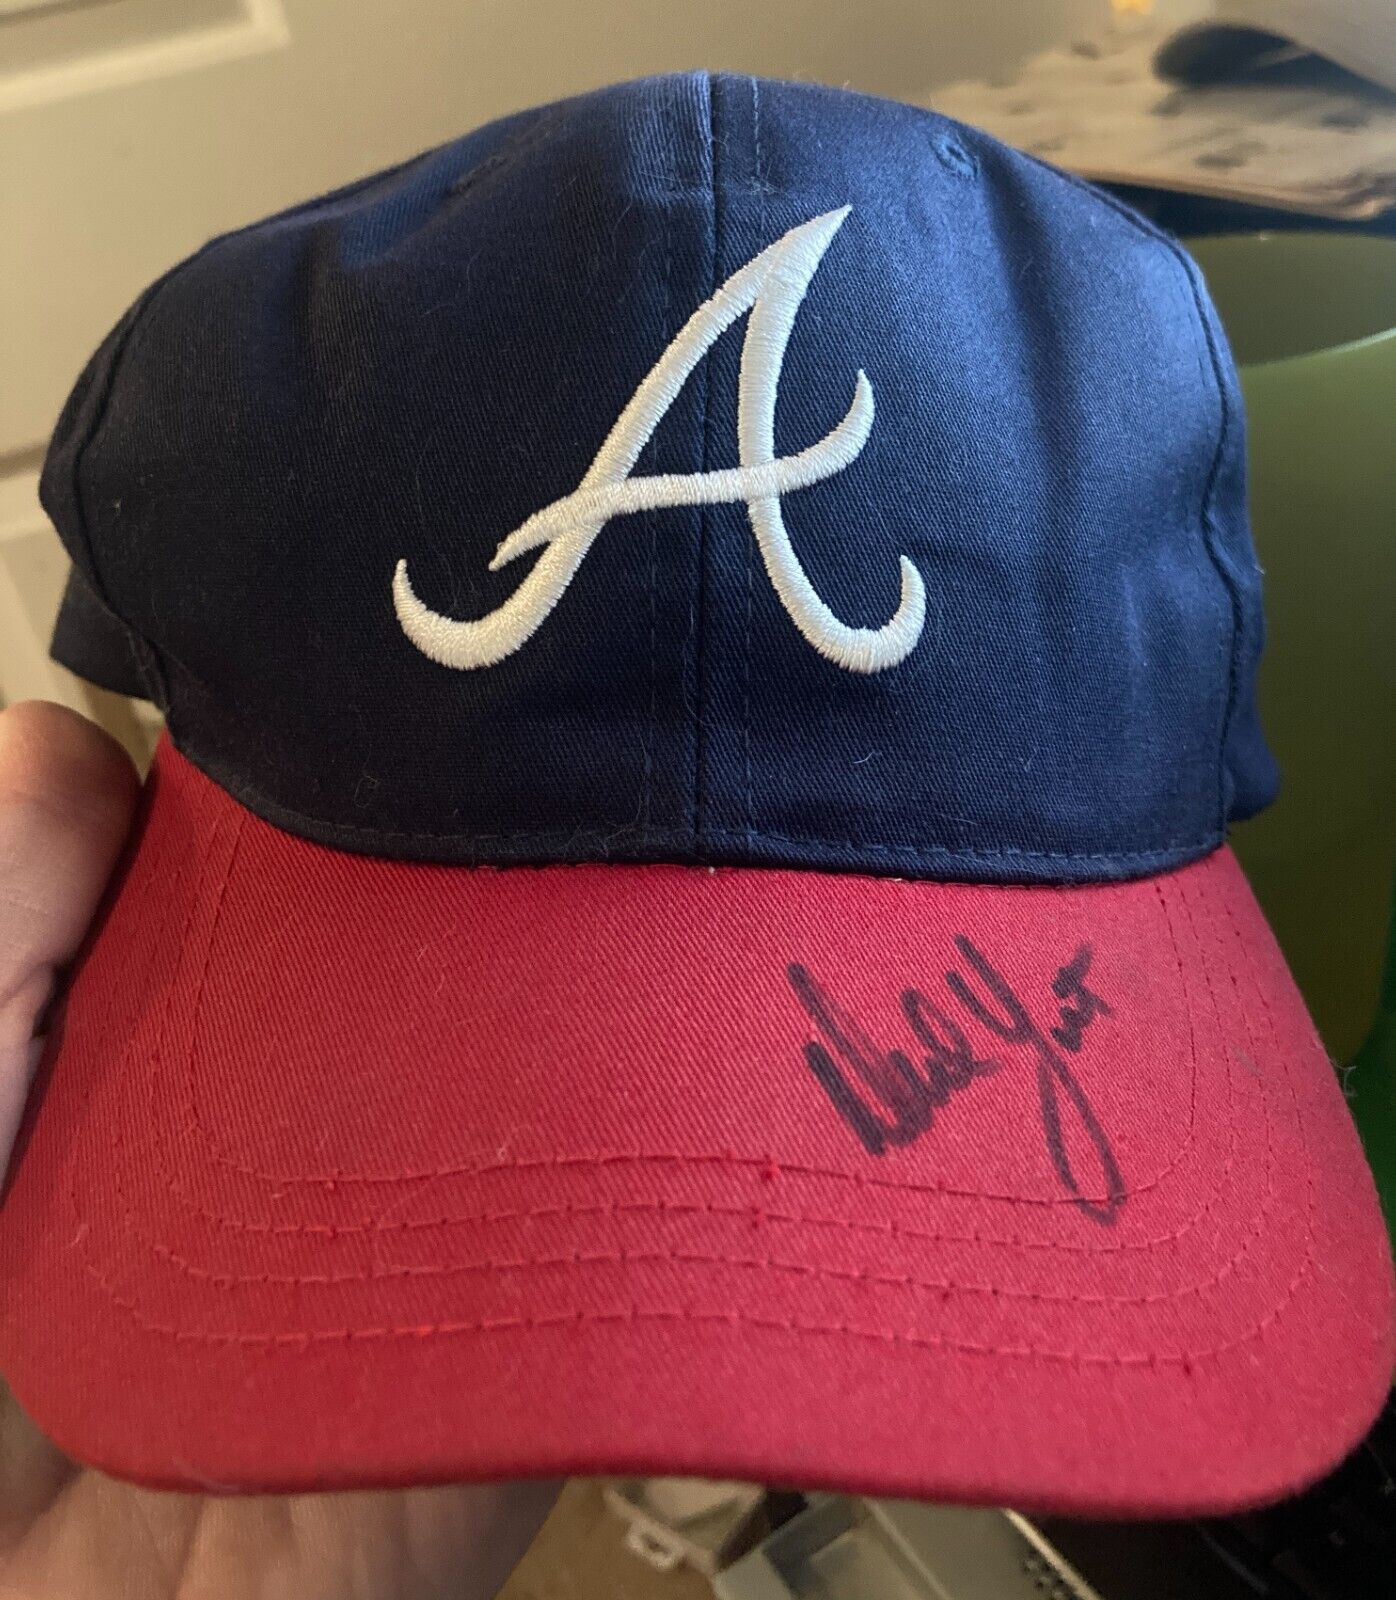 NED YOST signed BRAVES baseball cap hat